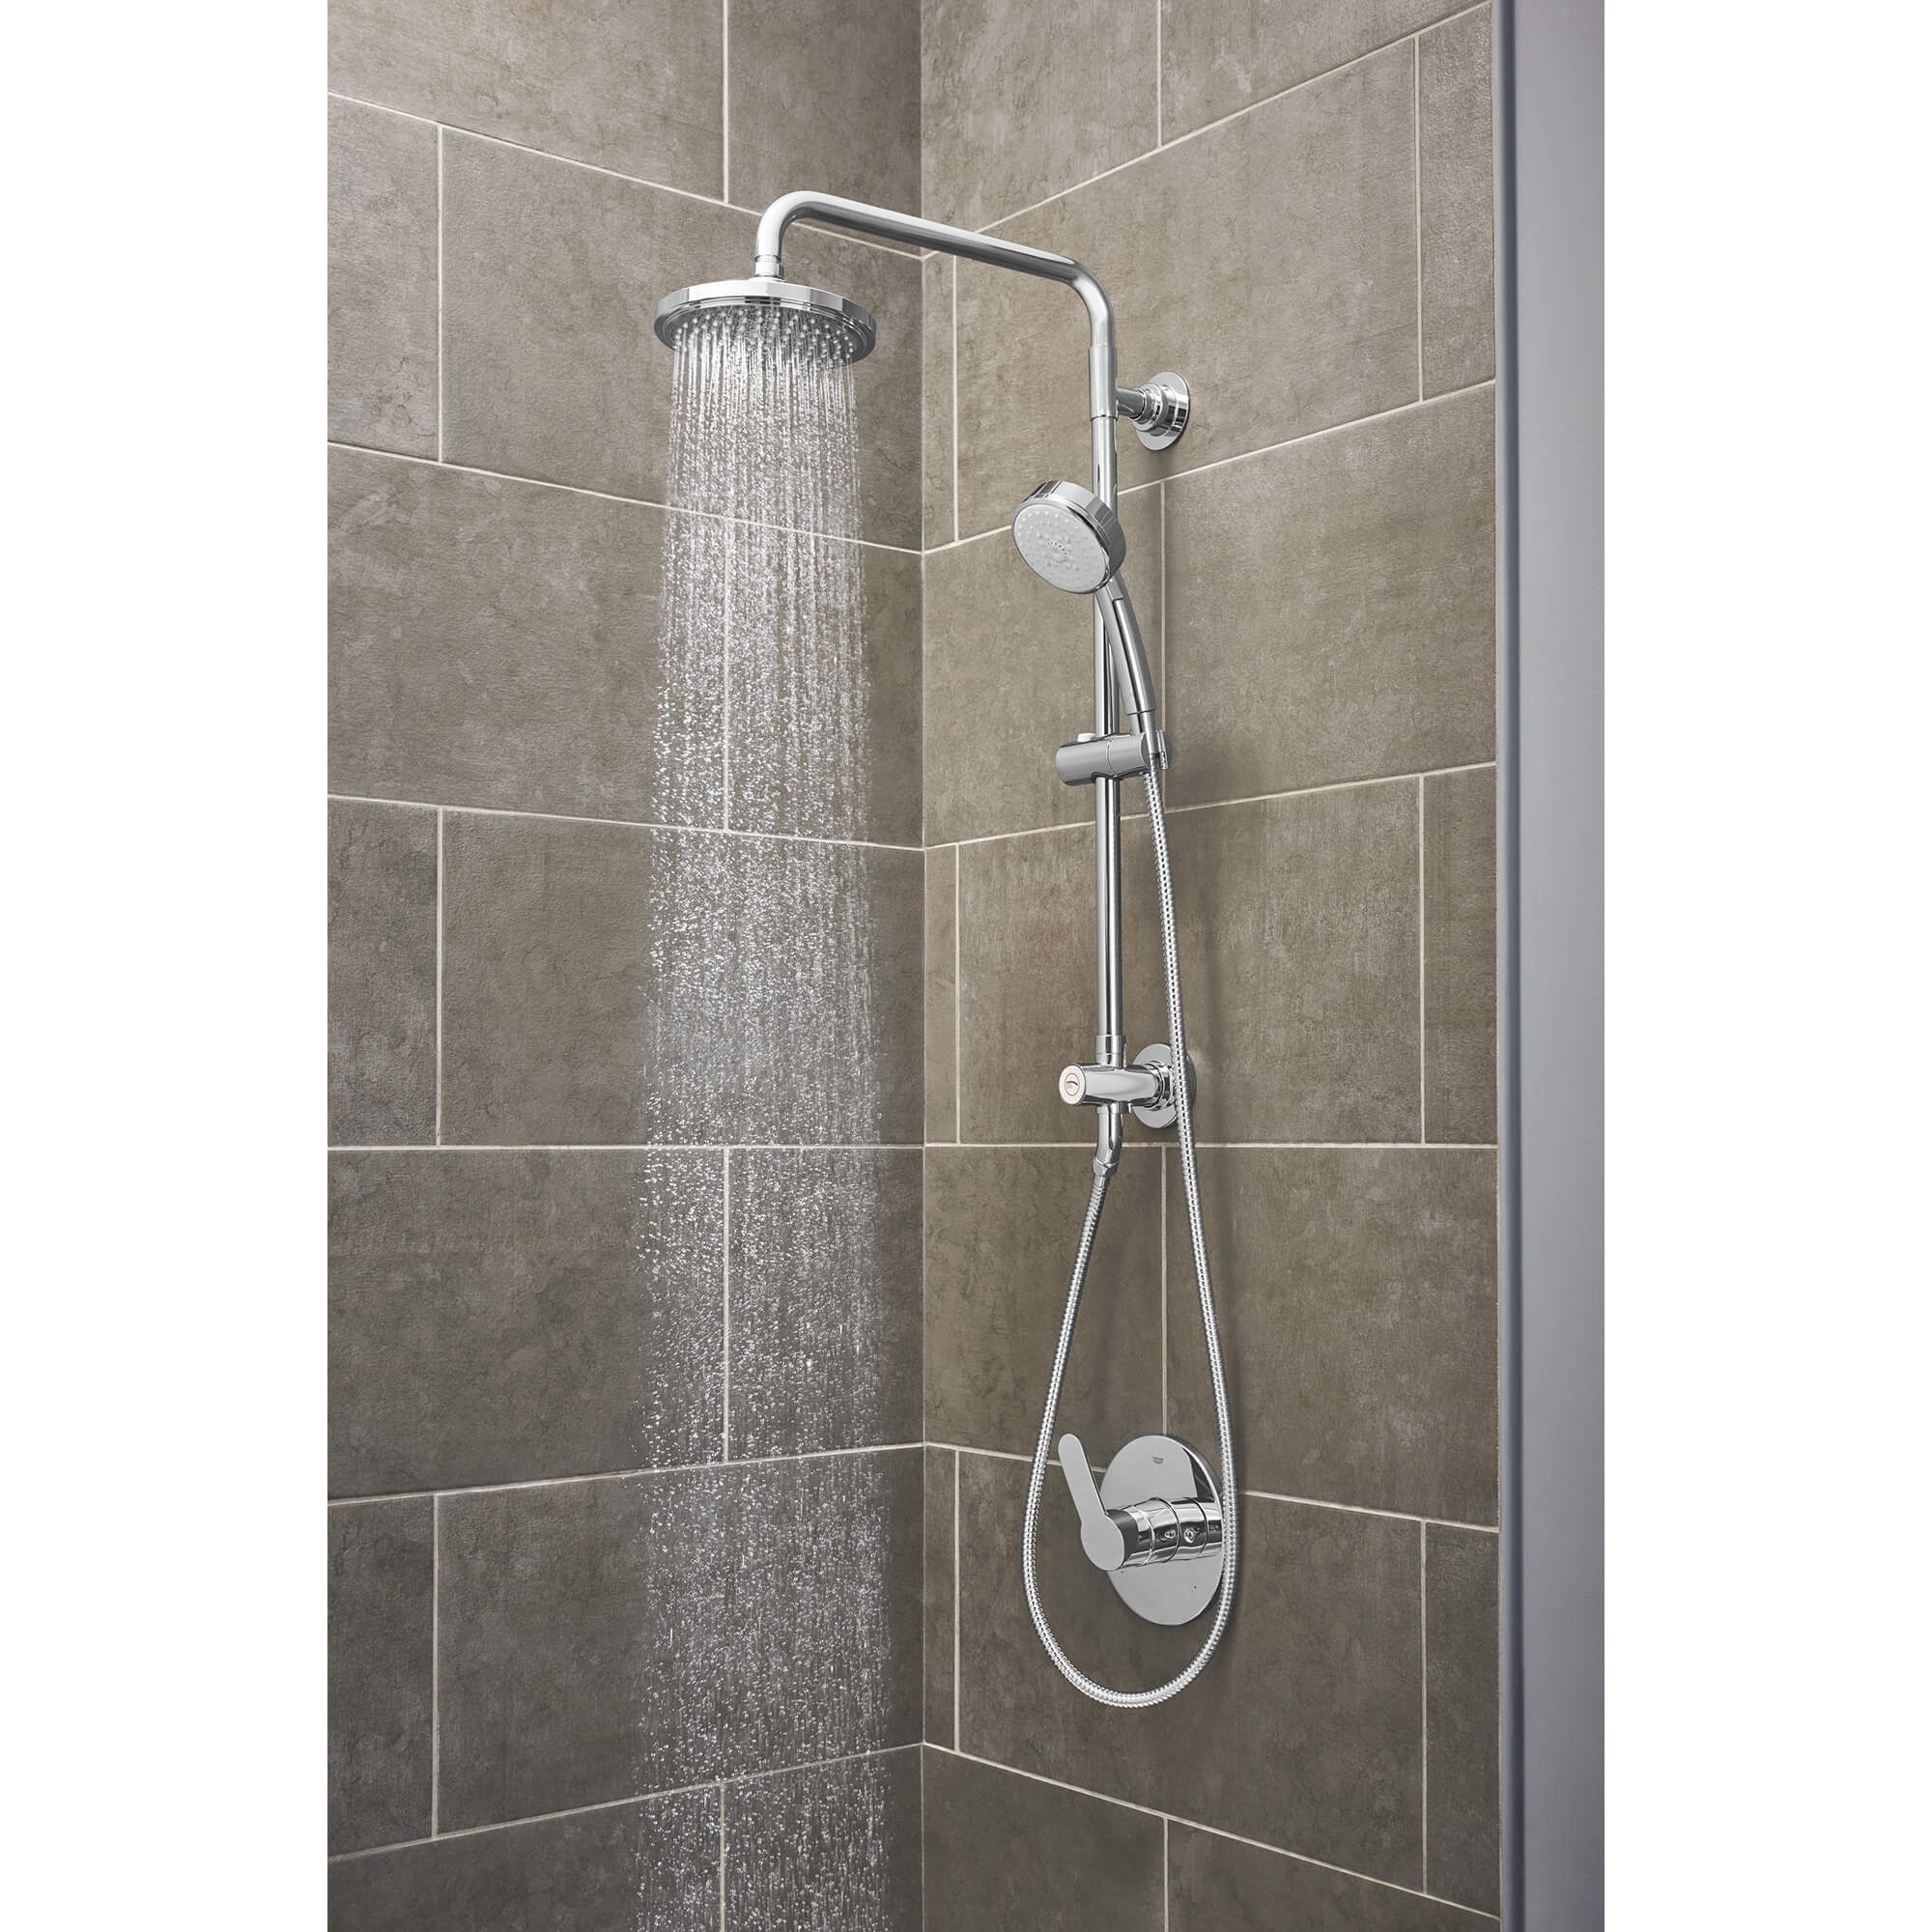 Doe voorzichtig Uitleg lettergreep Shower System, 1.75 gpm